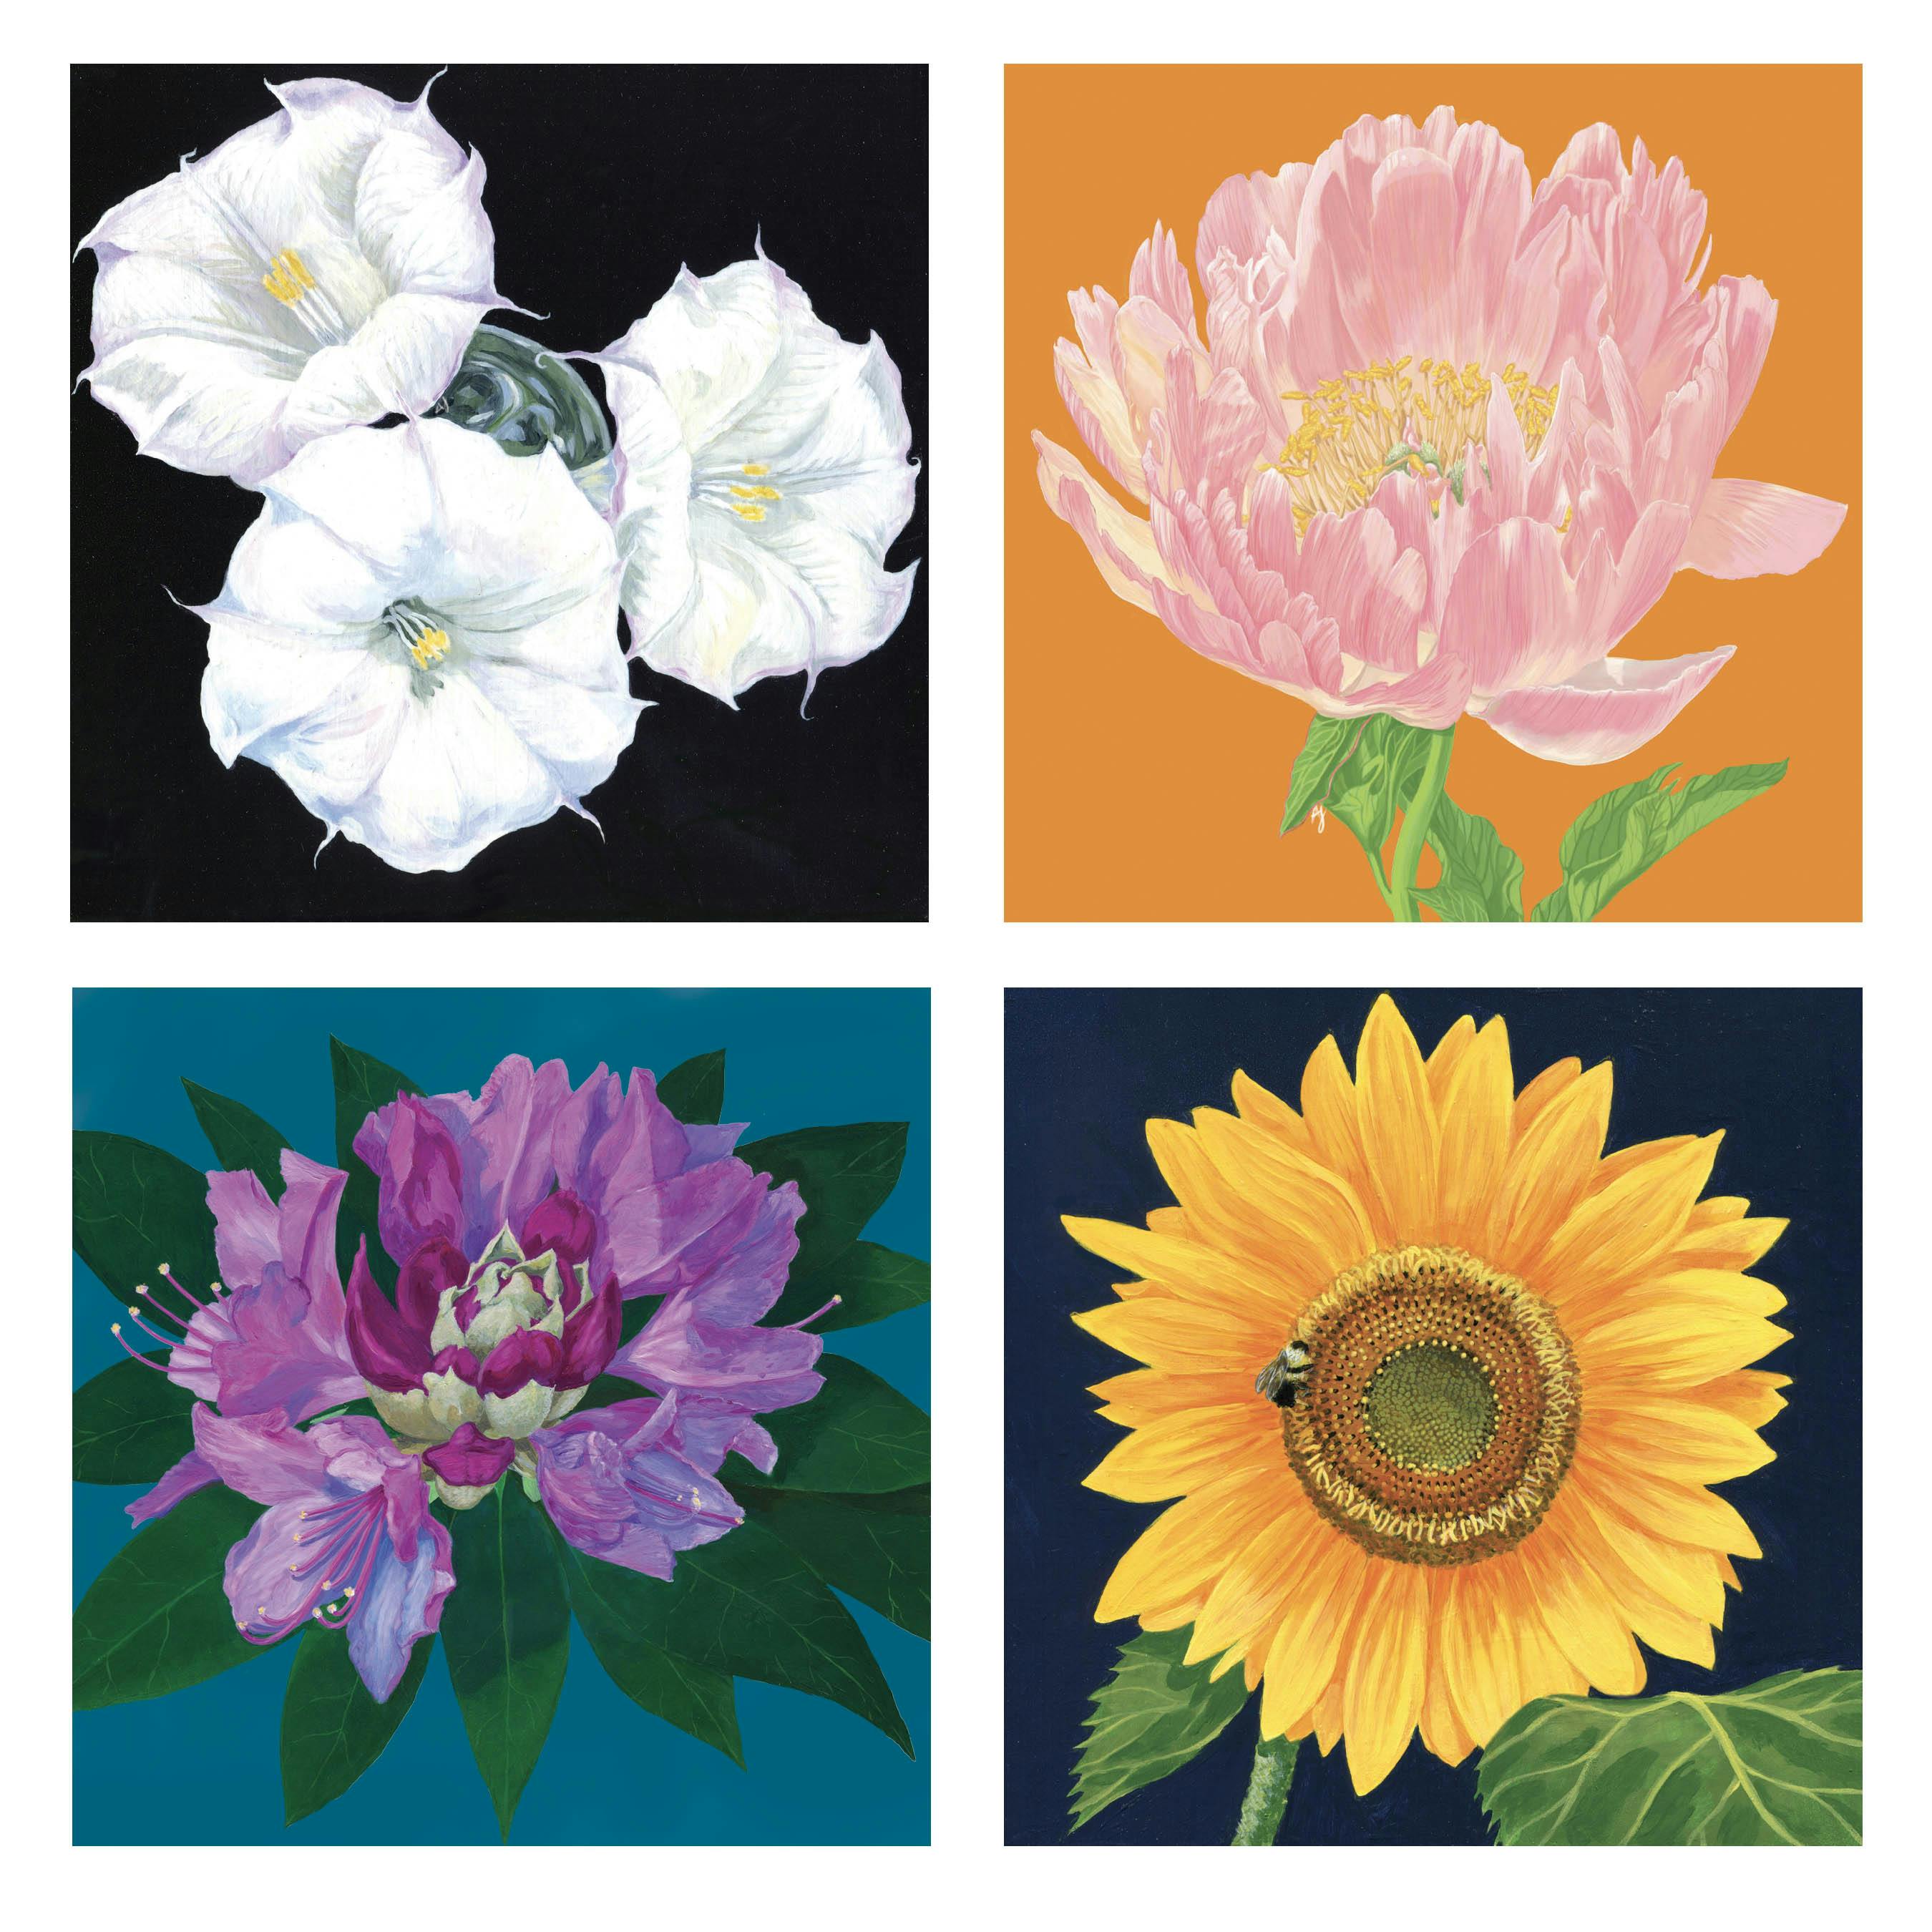 Four flower illustrations